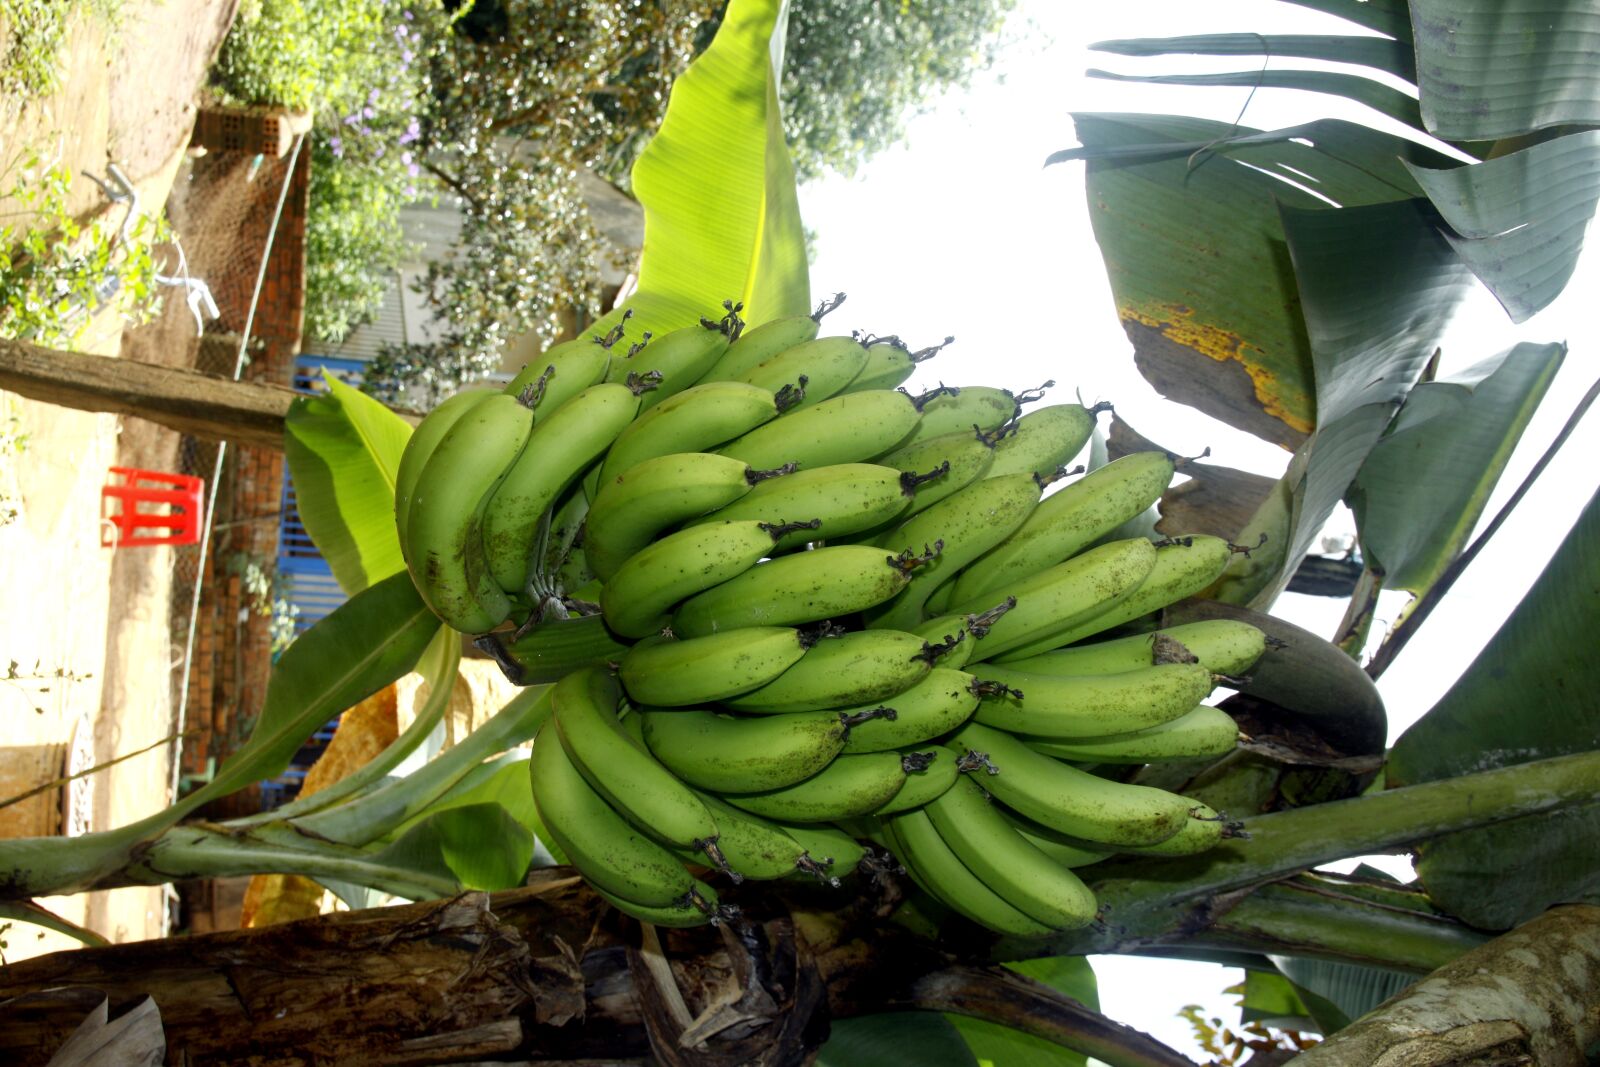 Canon EOS 50D sample photo. Bunch of bananas, bananas photography